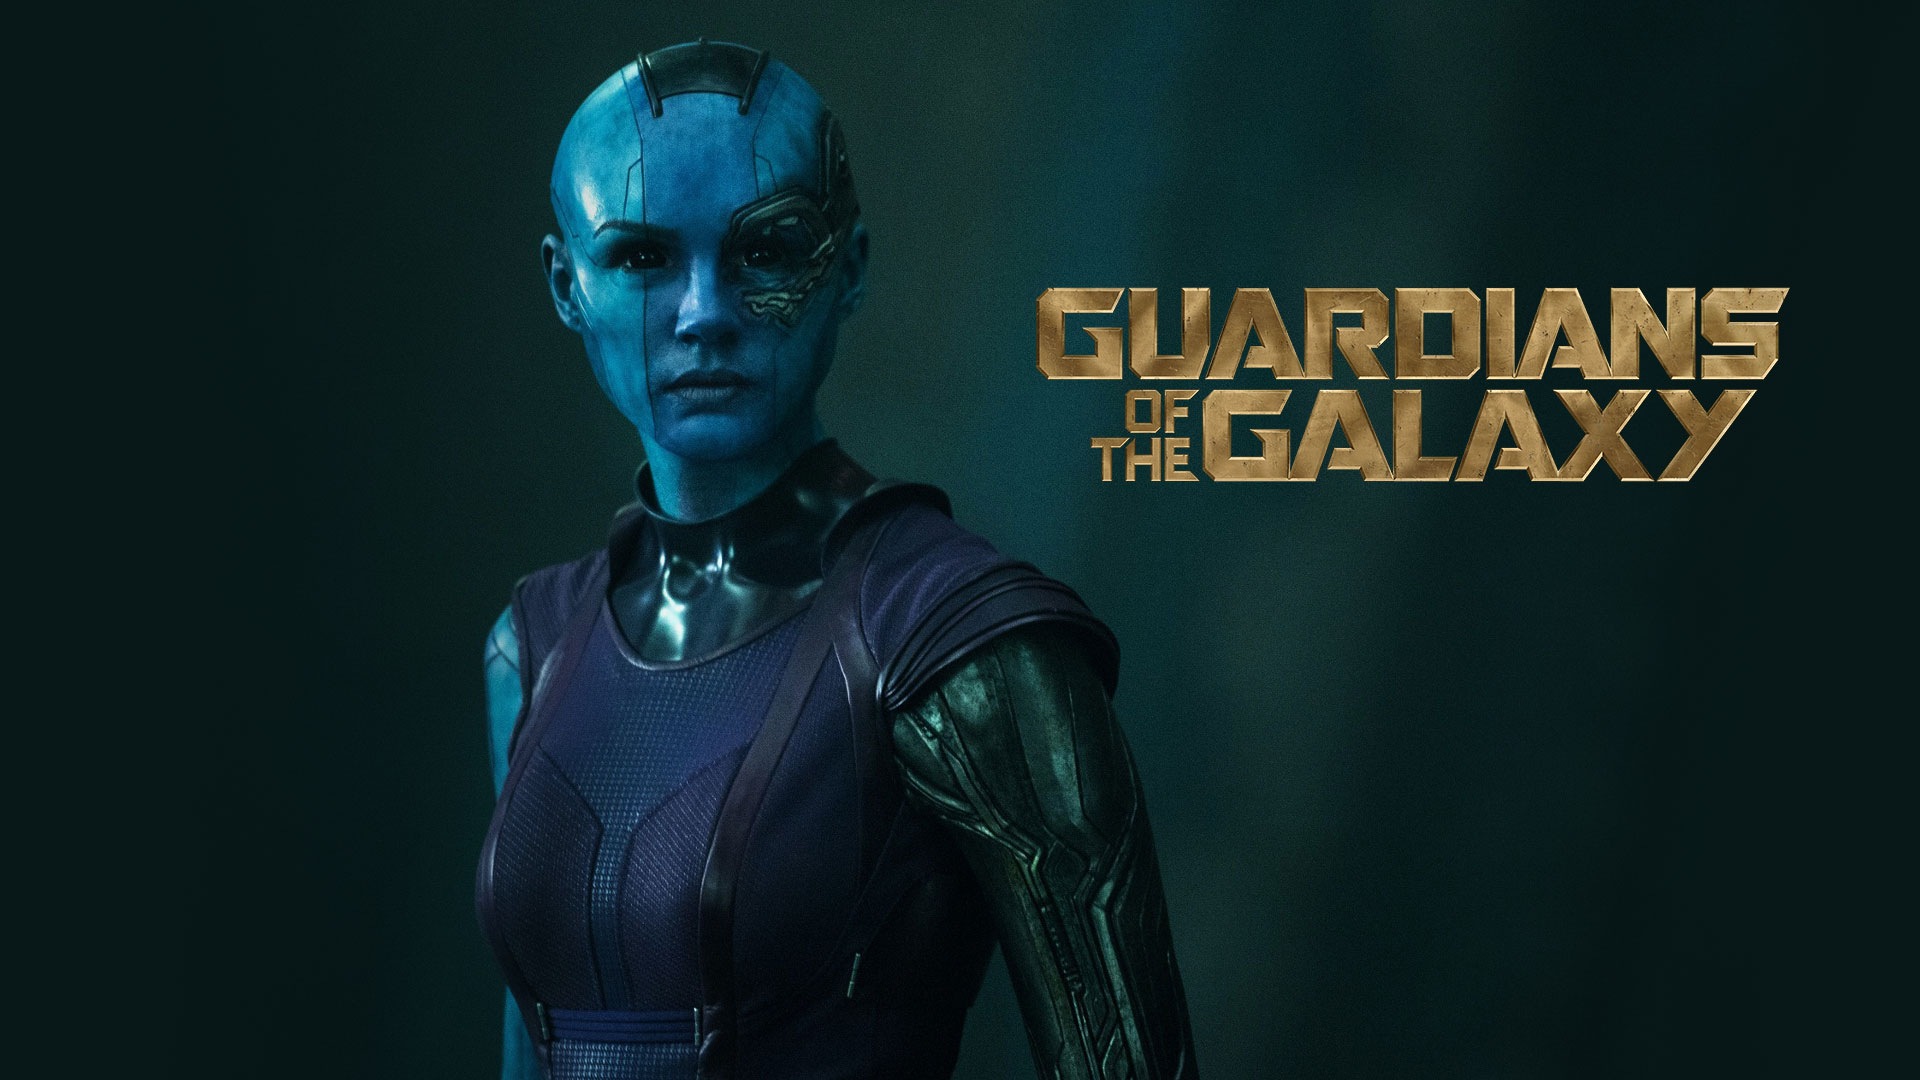 Guardianes de la Galaxia 2014 fondos de pantalla de películas de alta definición #10 - 1920x1080